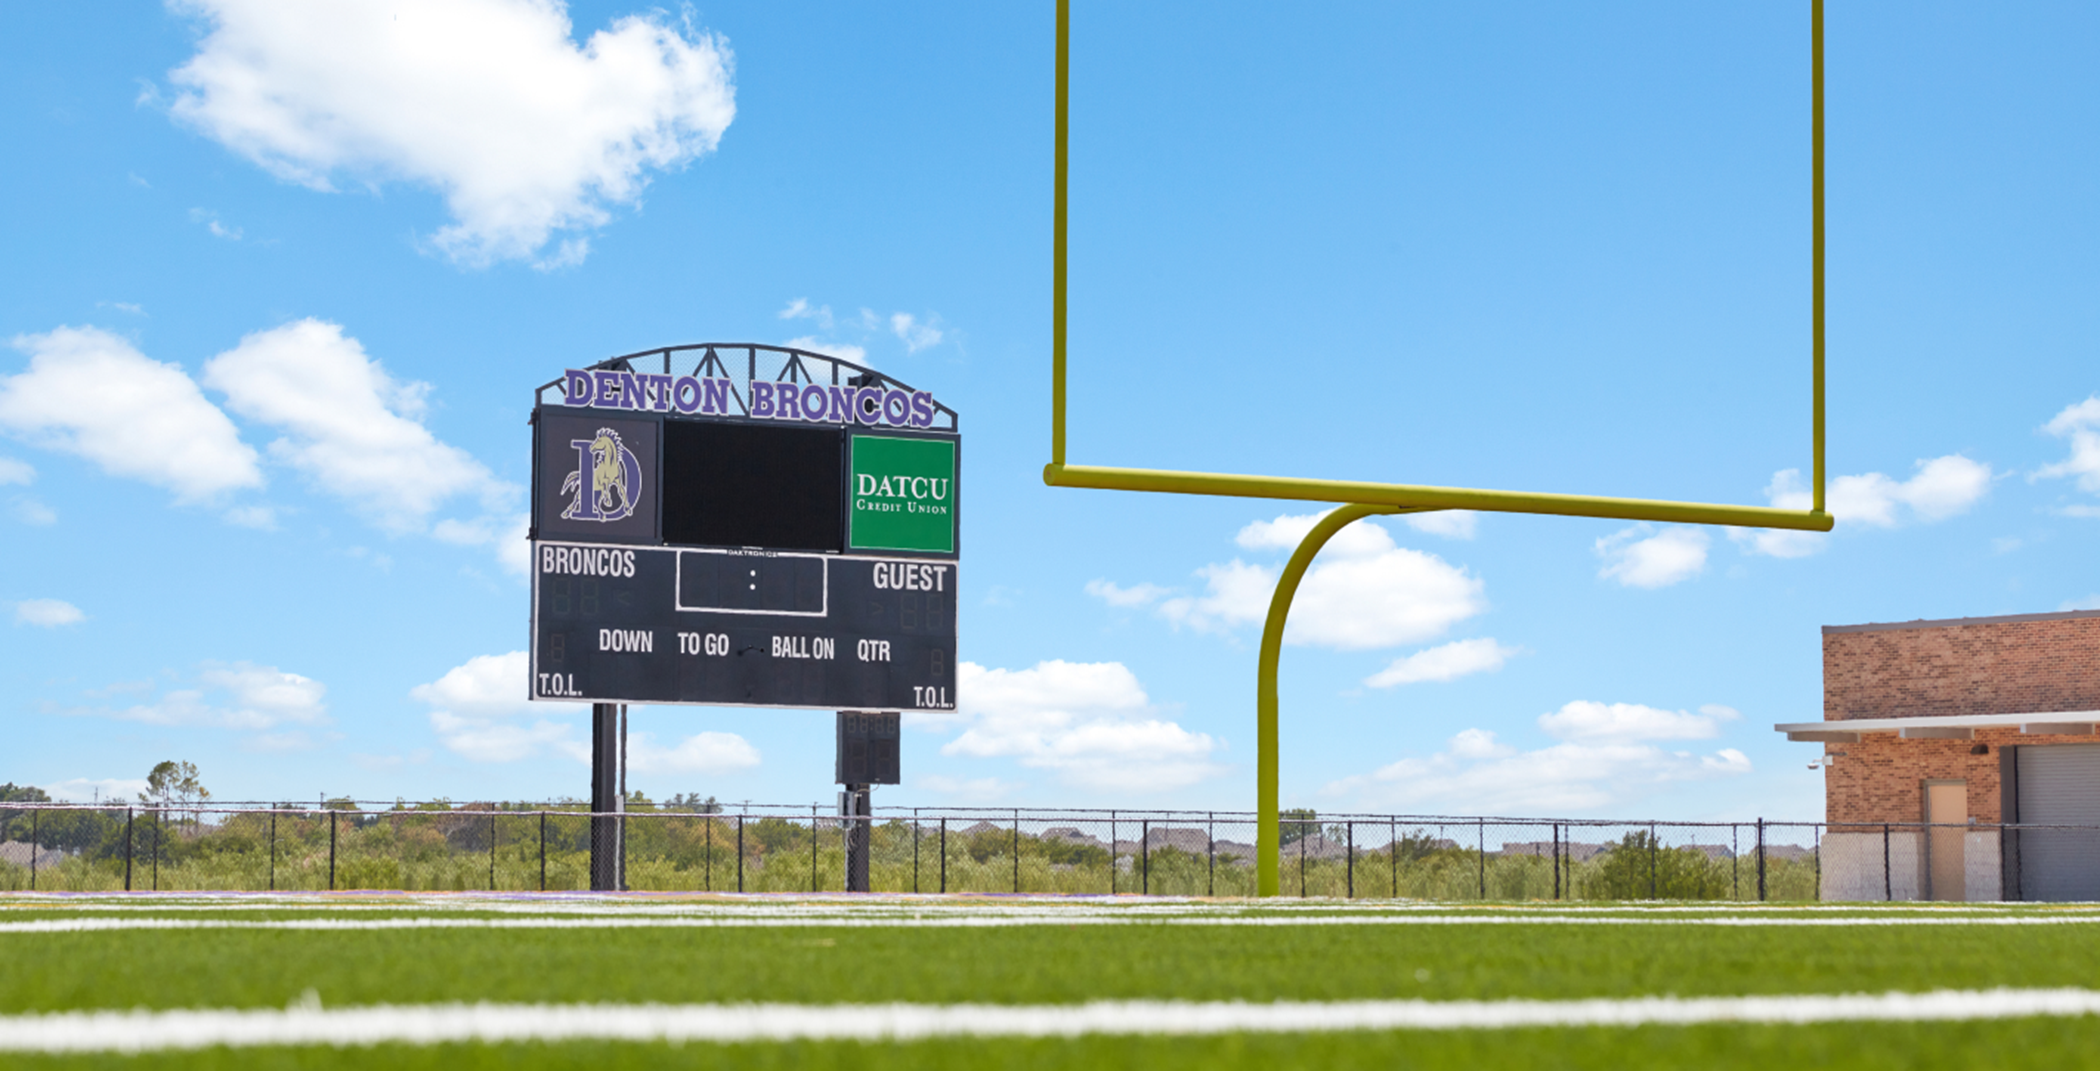 Denton High School football field in Denton, TX